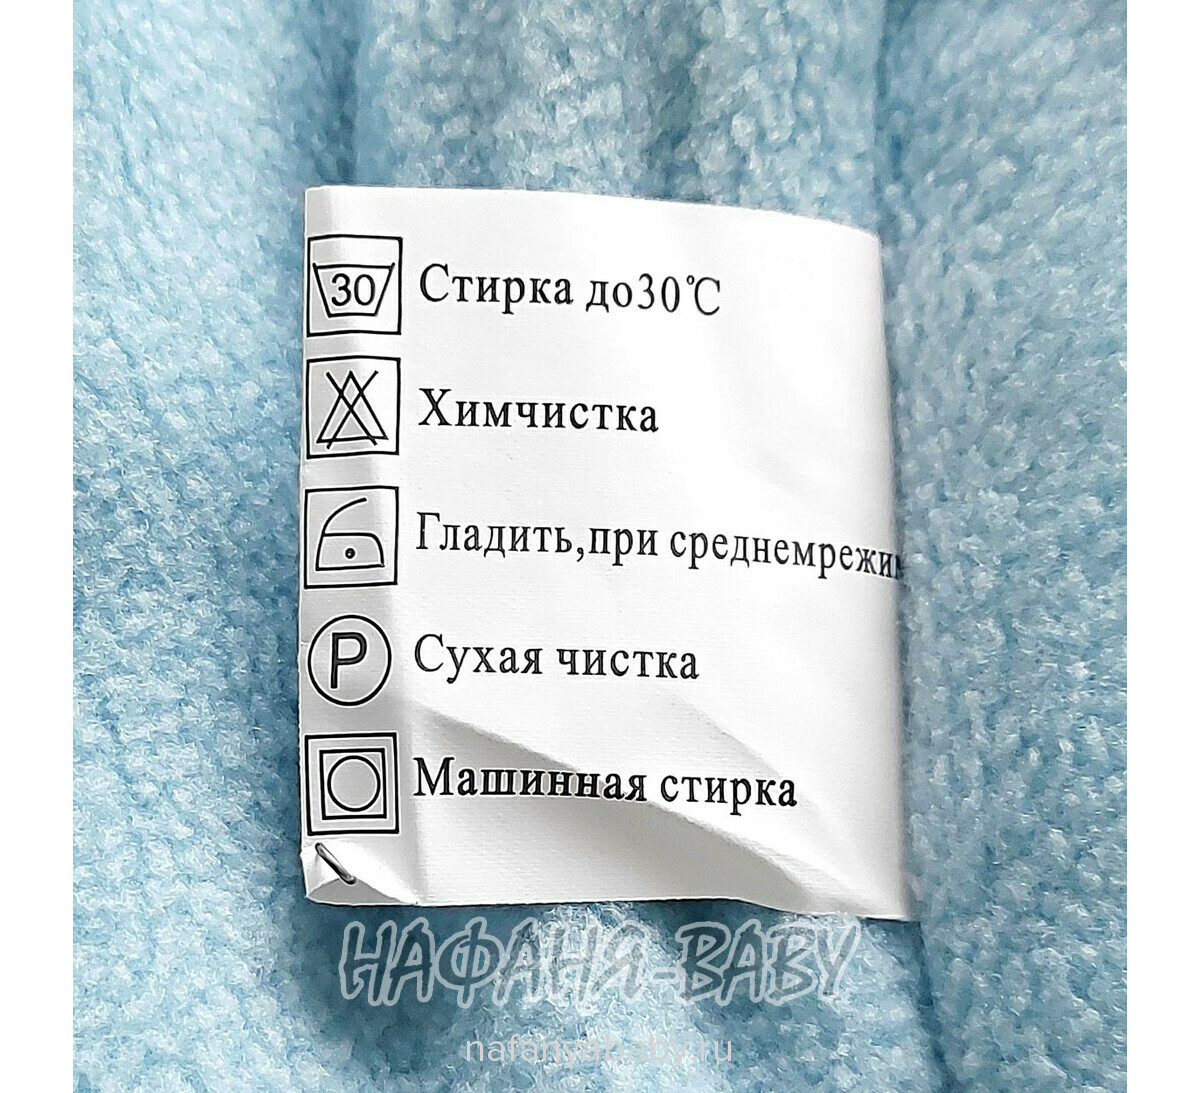 Зимняя куртка для девочки F.Z.B.D., купить в интернет магазине Нафаня. арт: 3101.